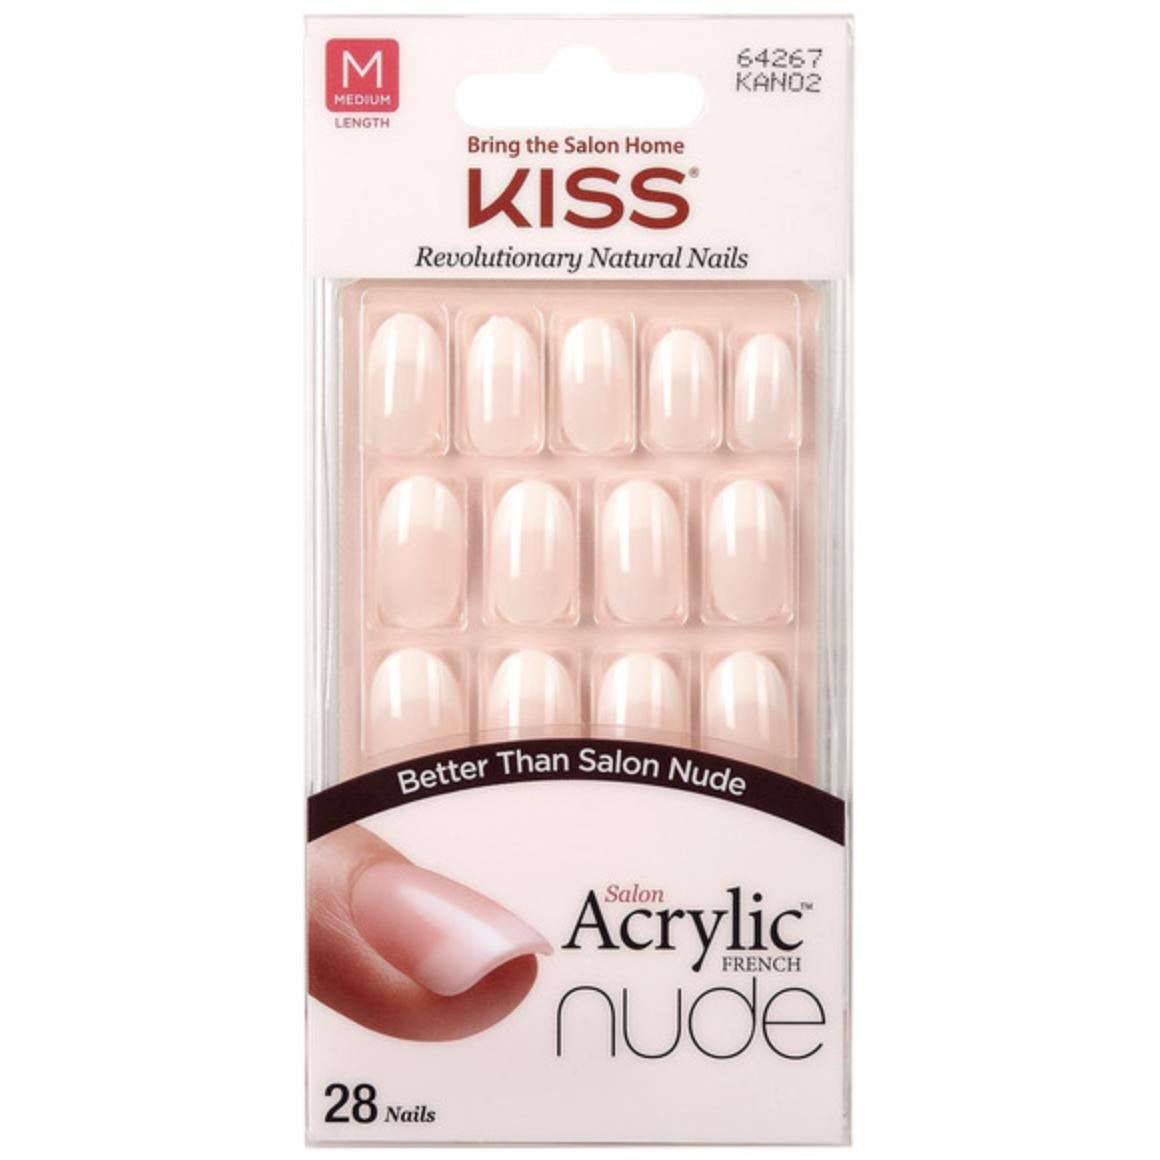 Kiss Acrylic Nude Graceful